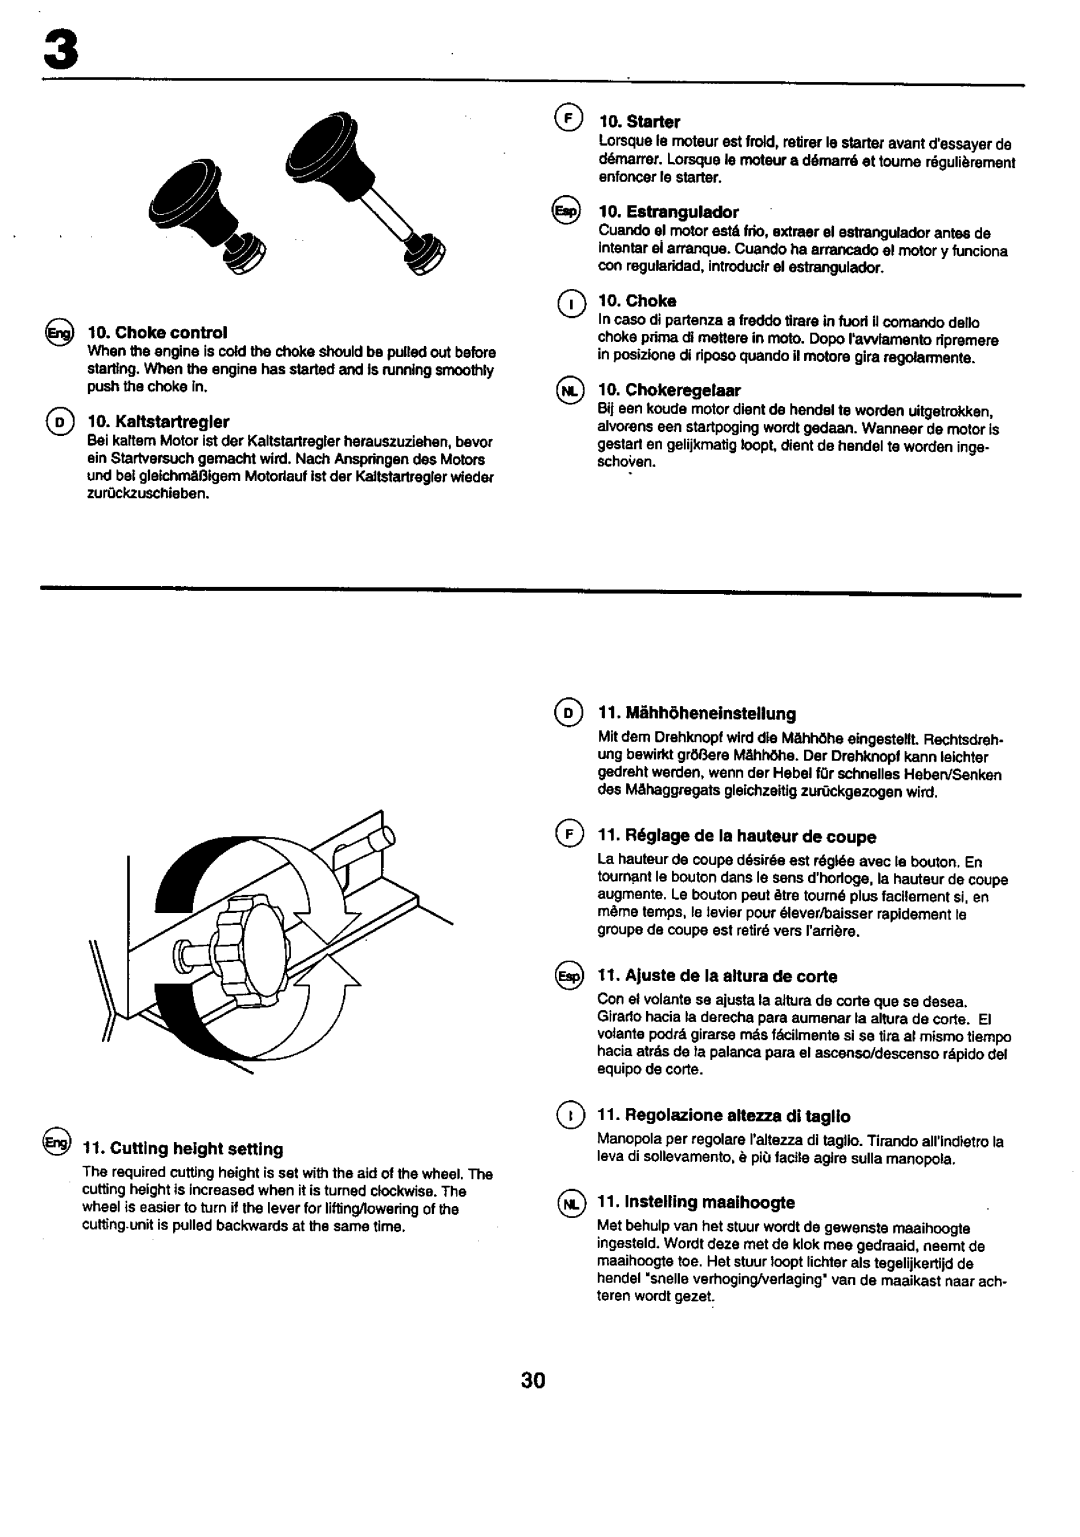 Craftsman 25949 instruction manual Q10. Kaltstertregler, 11. M_hh6heneinstellung 